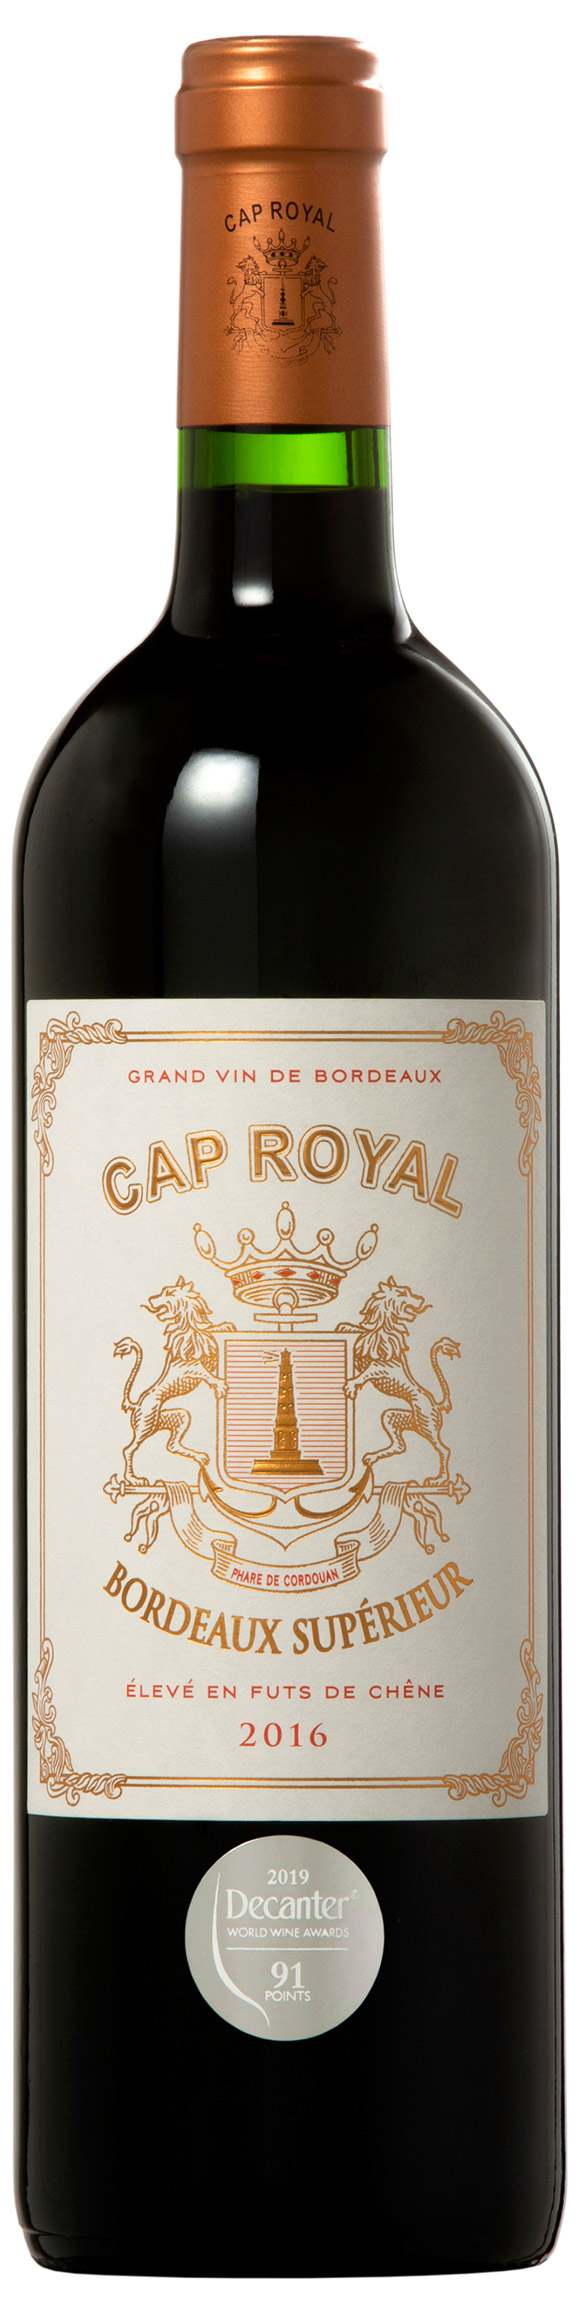 Cap Royal Bordeaux Supérieur rouge 2016